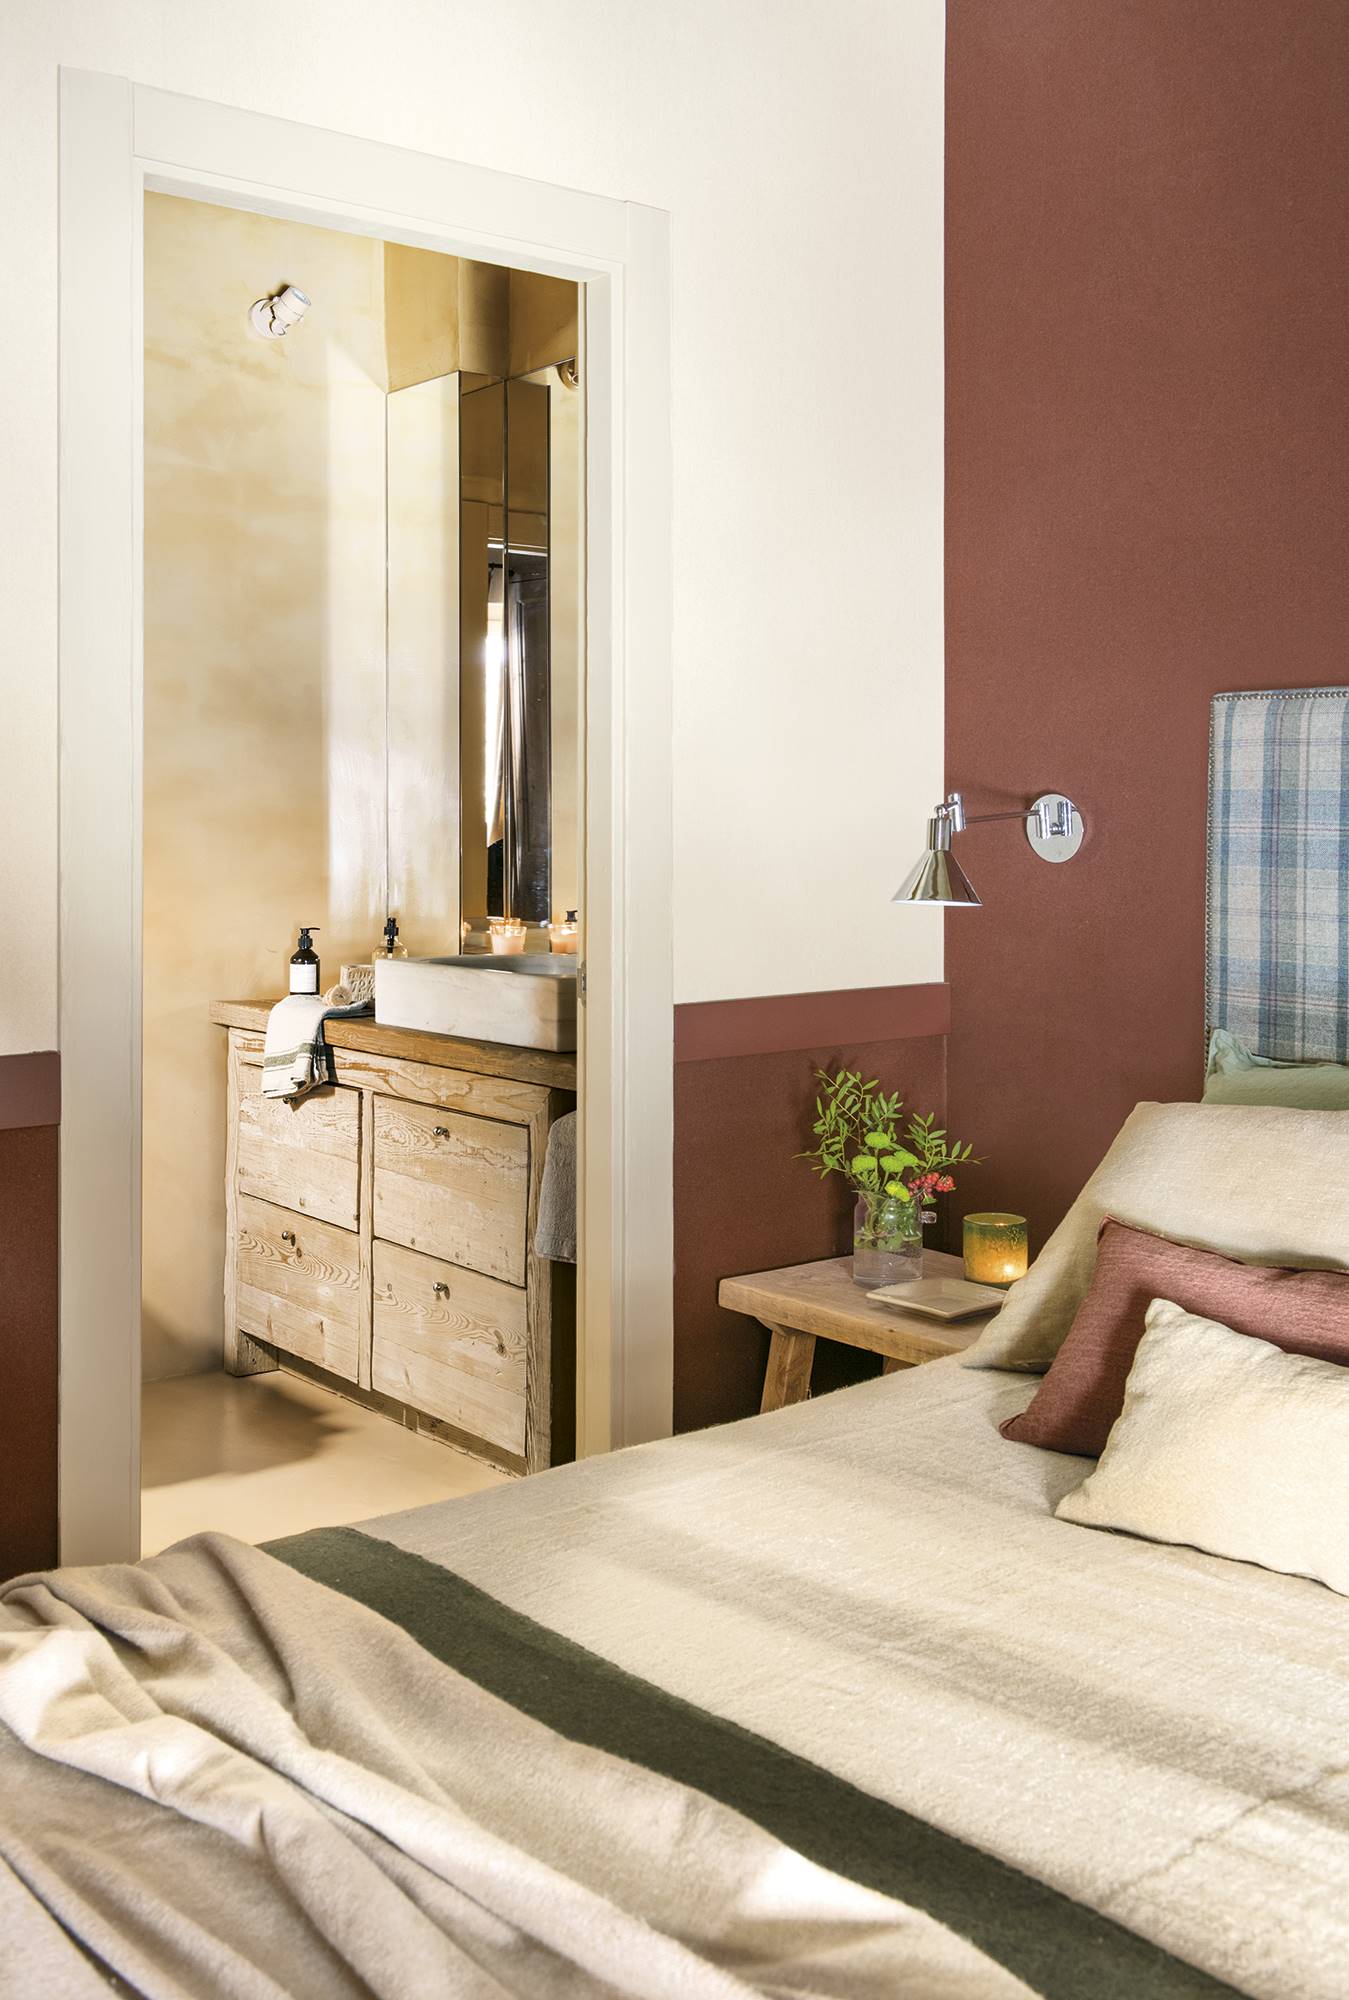 Dormitorio principal con mesita de noche de madera, cabecero tapizado, pared granate y acceso al baño 